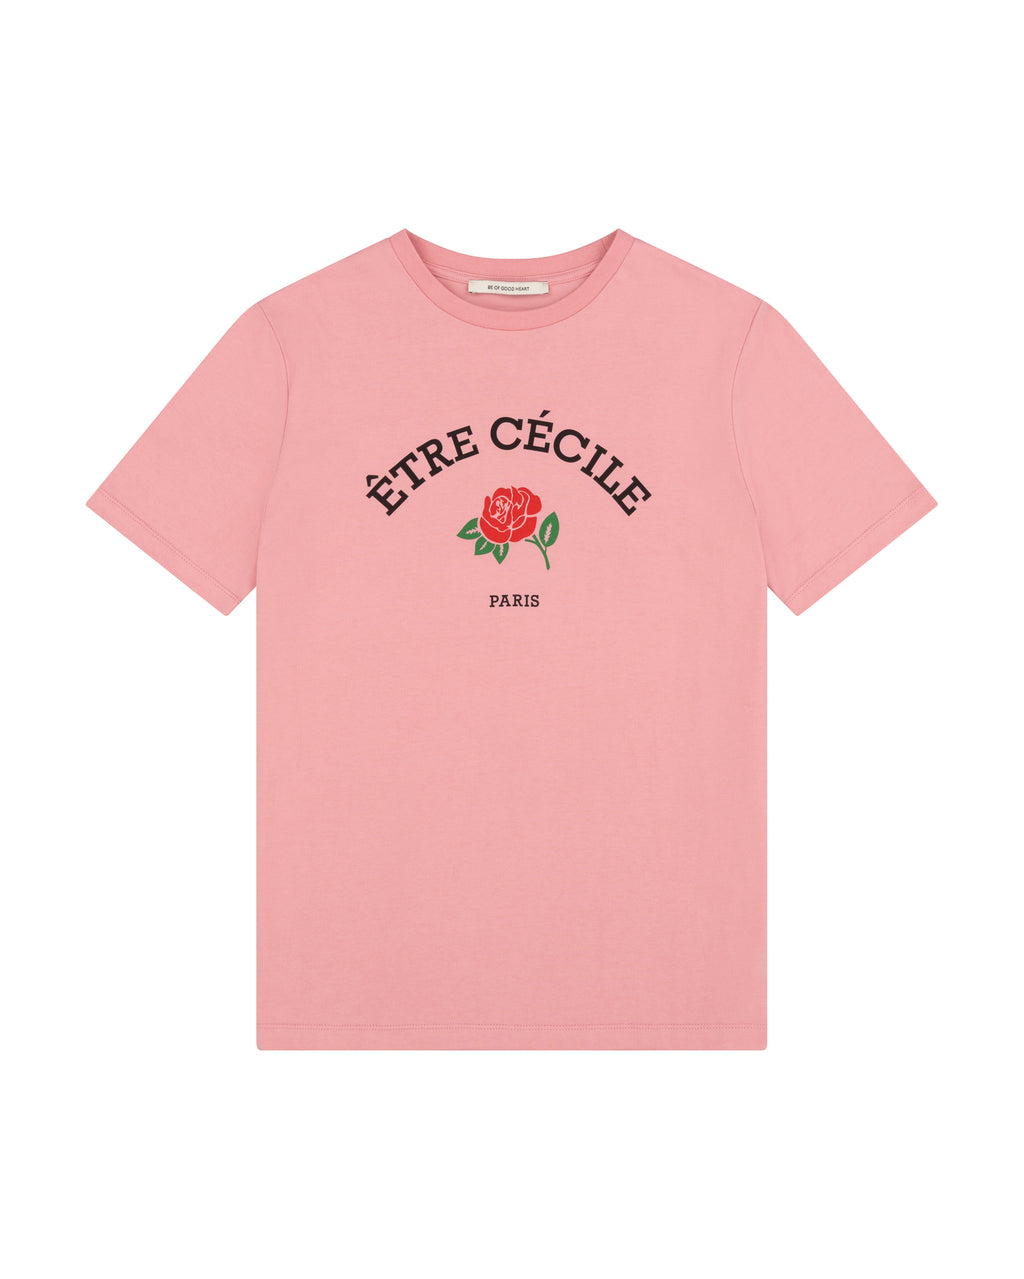 Etre Cecile Rose Classic T-Shirt - Être Cécile